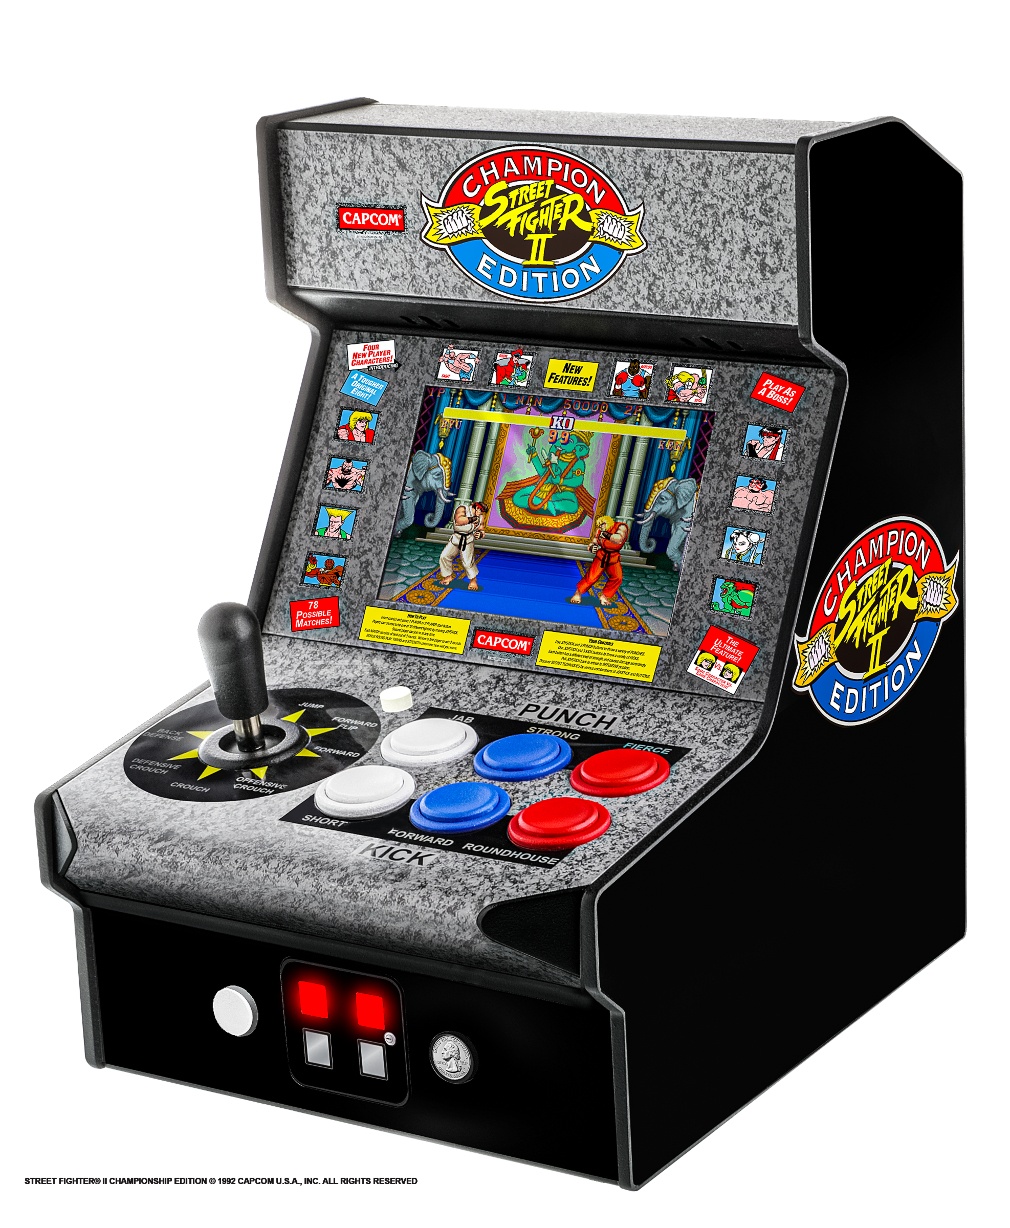 Arcade'im Super Retro Champ'u duyurdu Switch- 16 bit 2 kartuşlar için stil konsolları